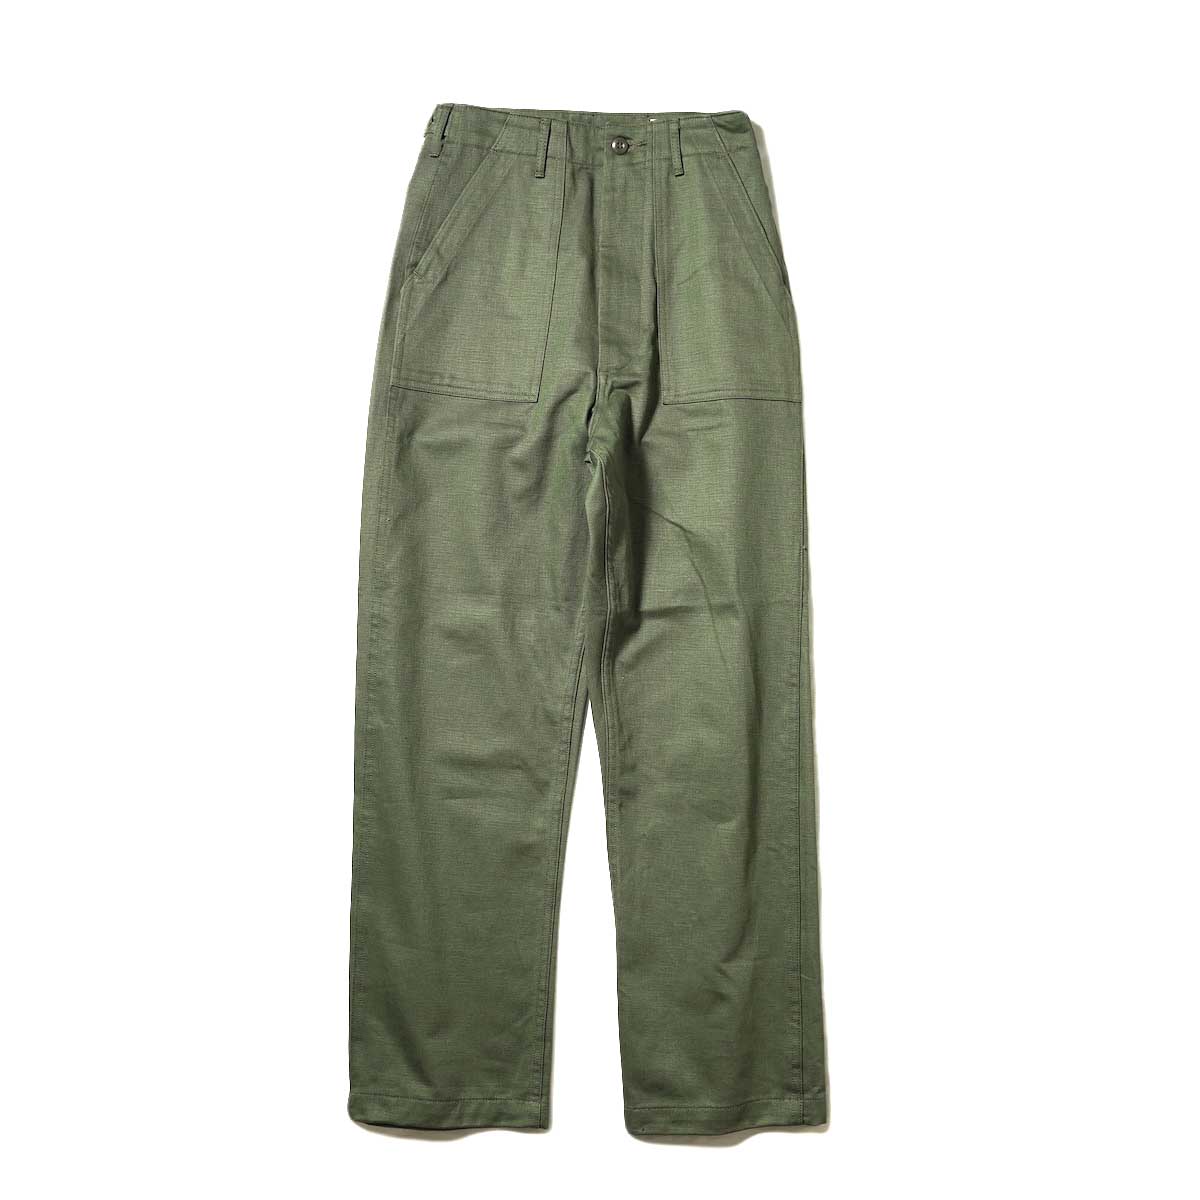 orSlow / HIGH WAIST FATIGUE PANTS (Green)